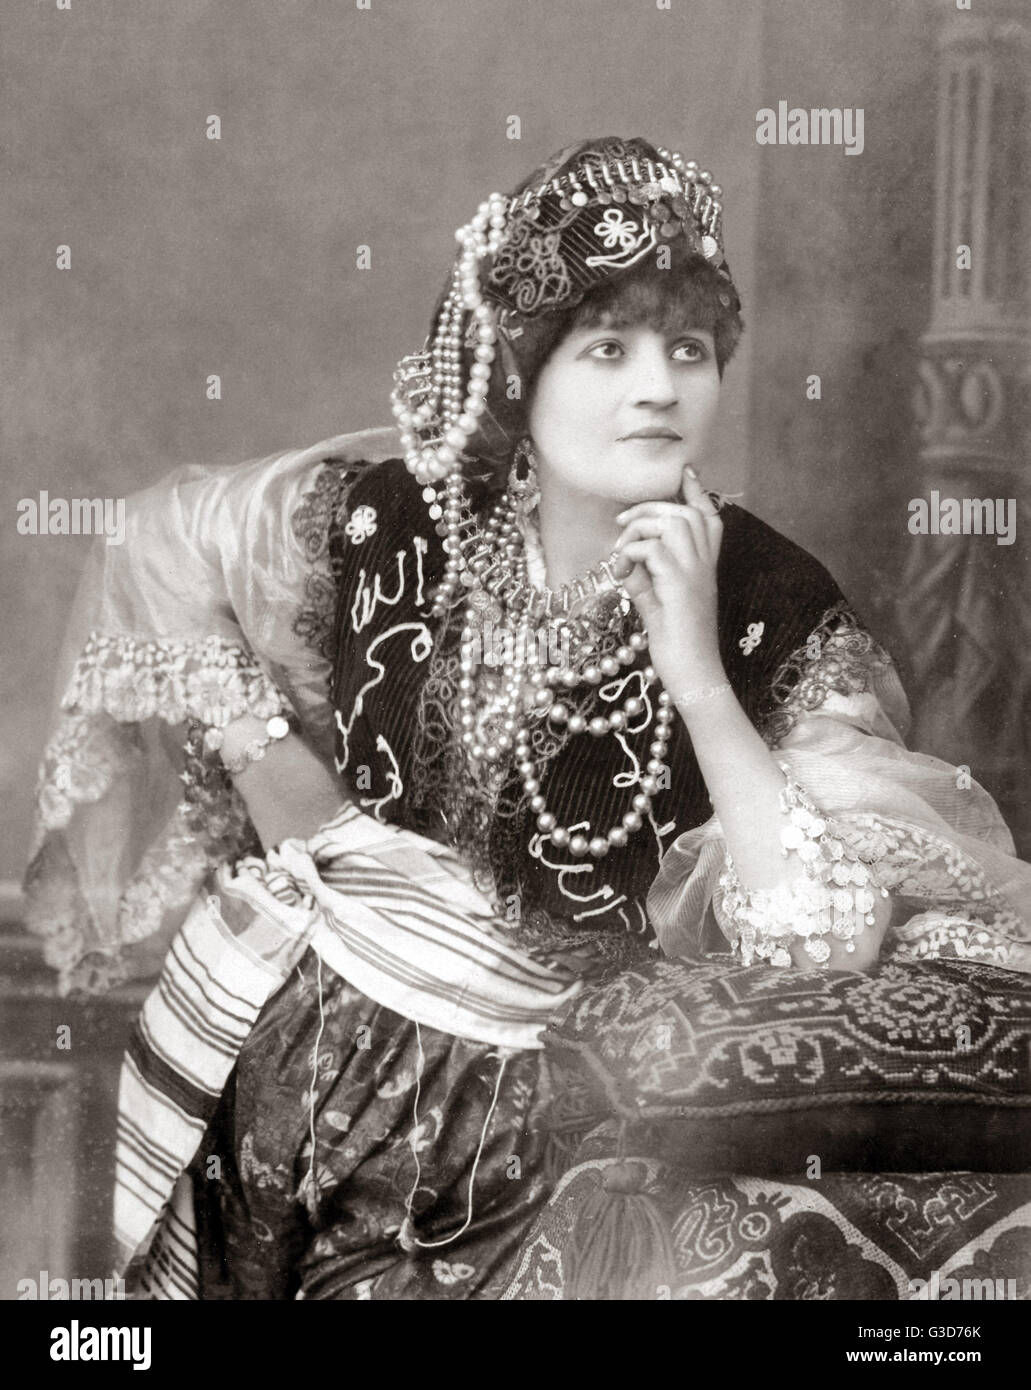 Danseur égyptien ou turc, vers 1890 Banque D'Images